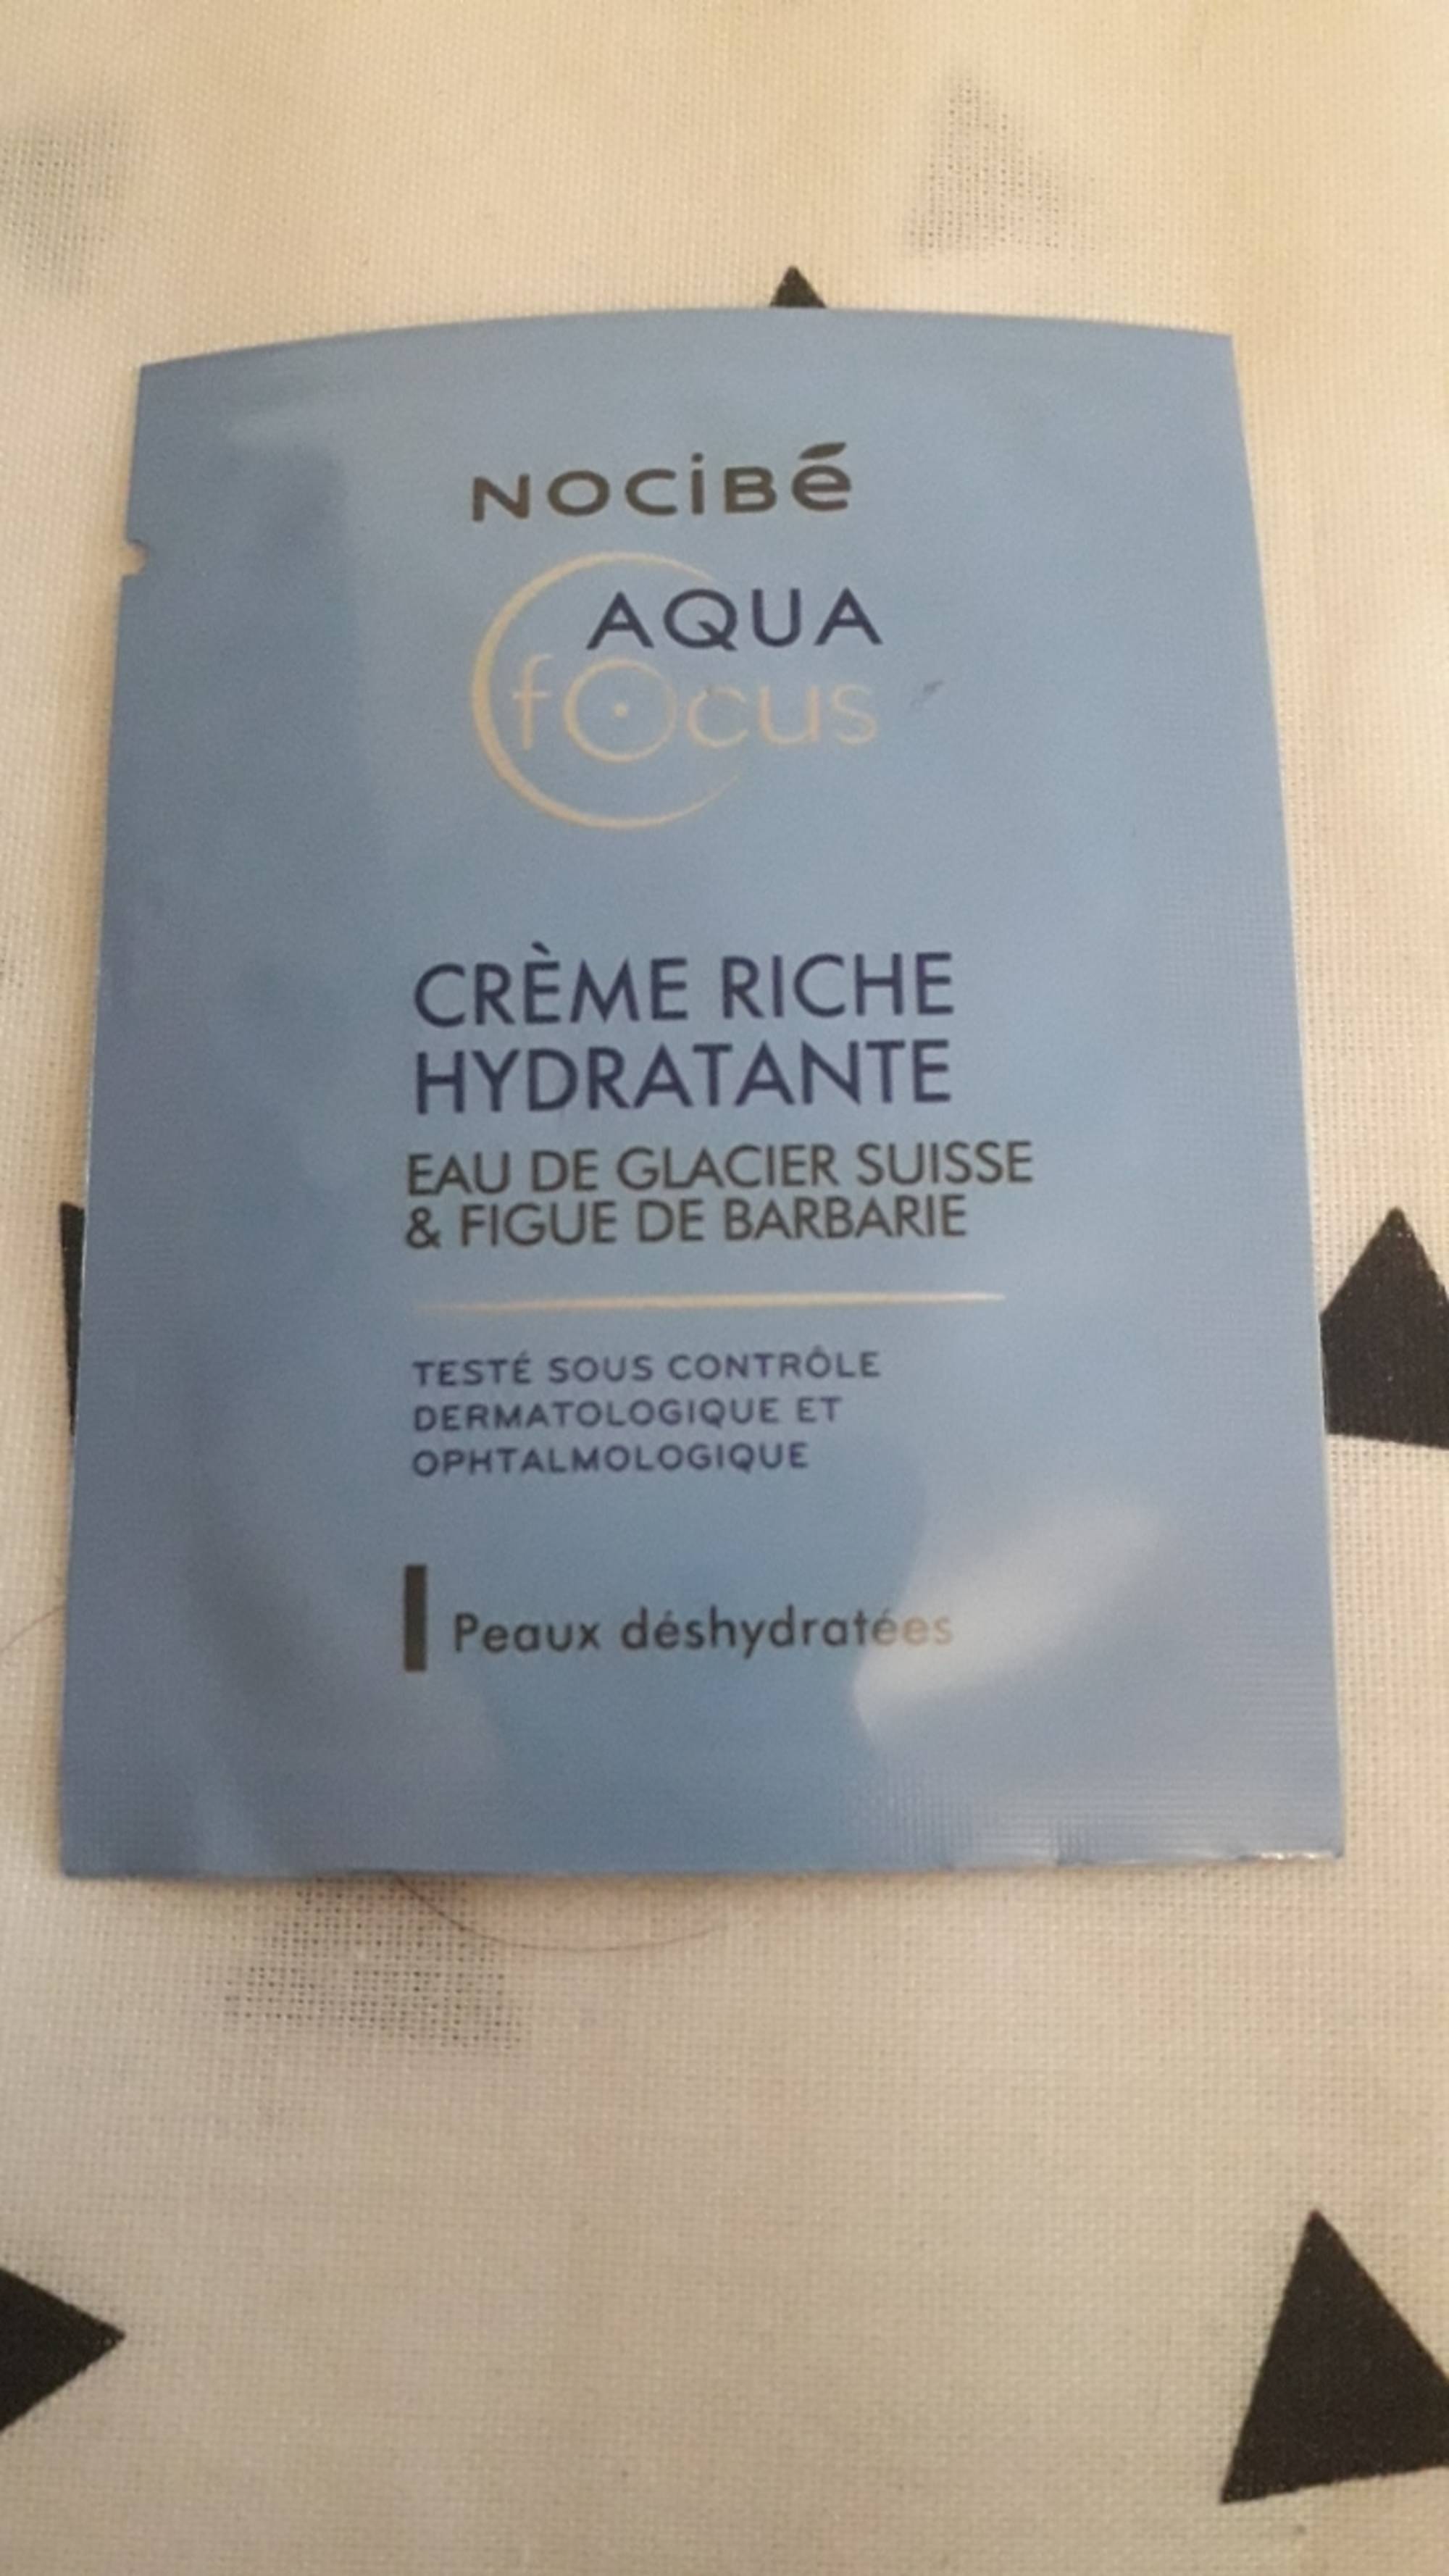 NOCIBÉ - Aqua focus - Crème riche hydratante à l'eau de glacier suisse